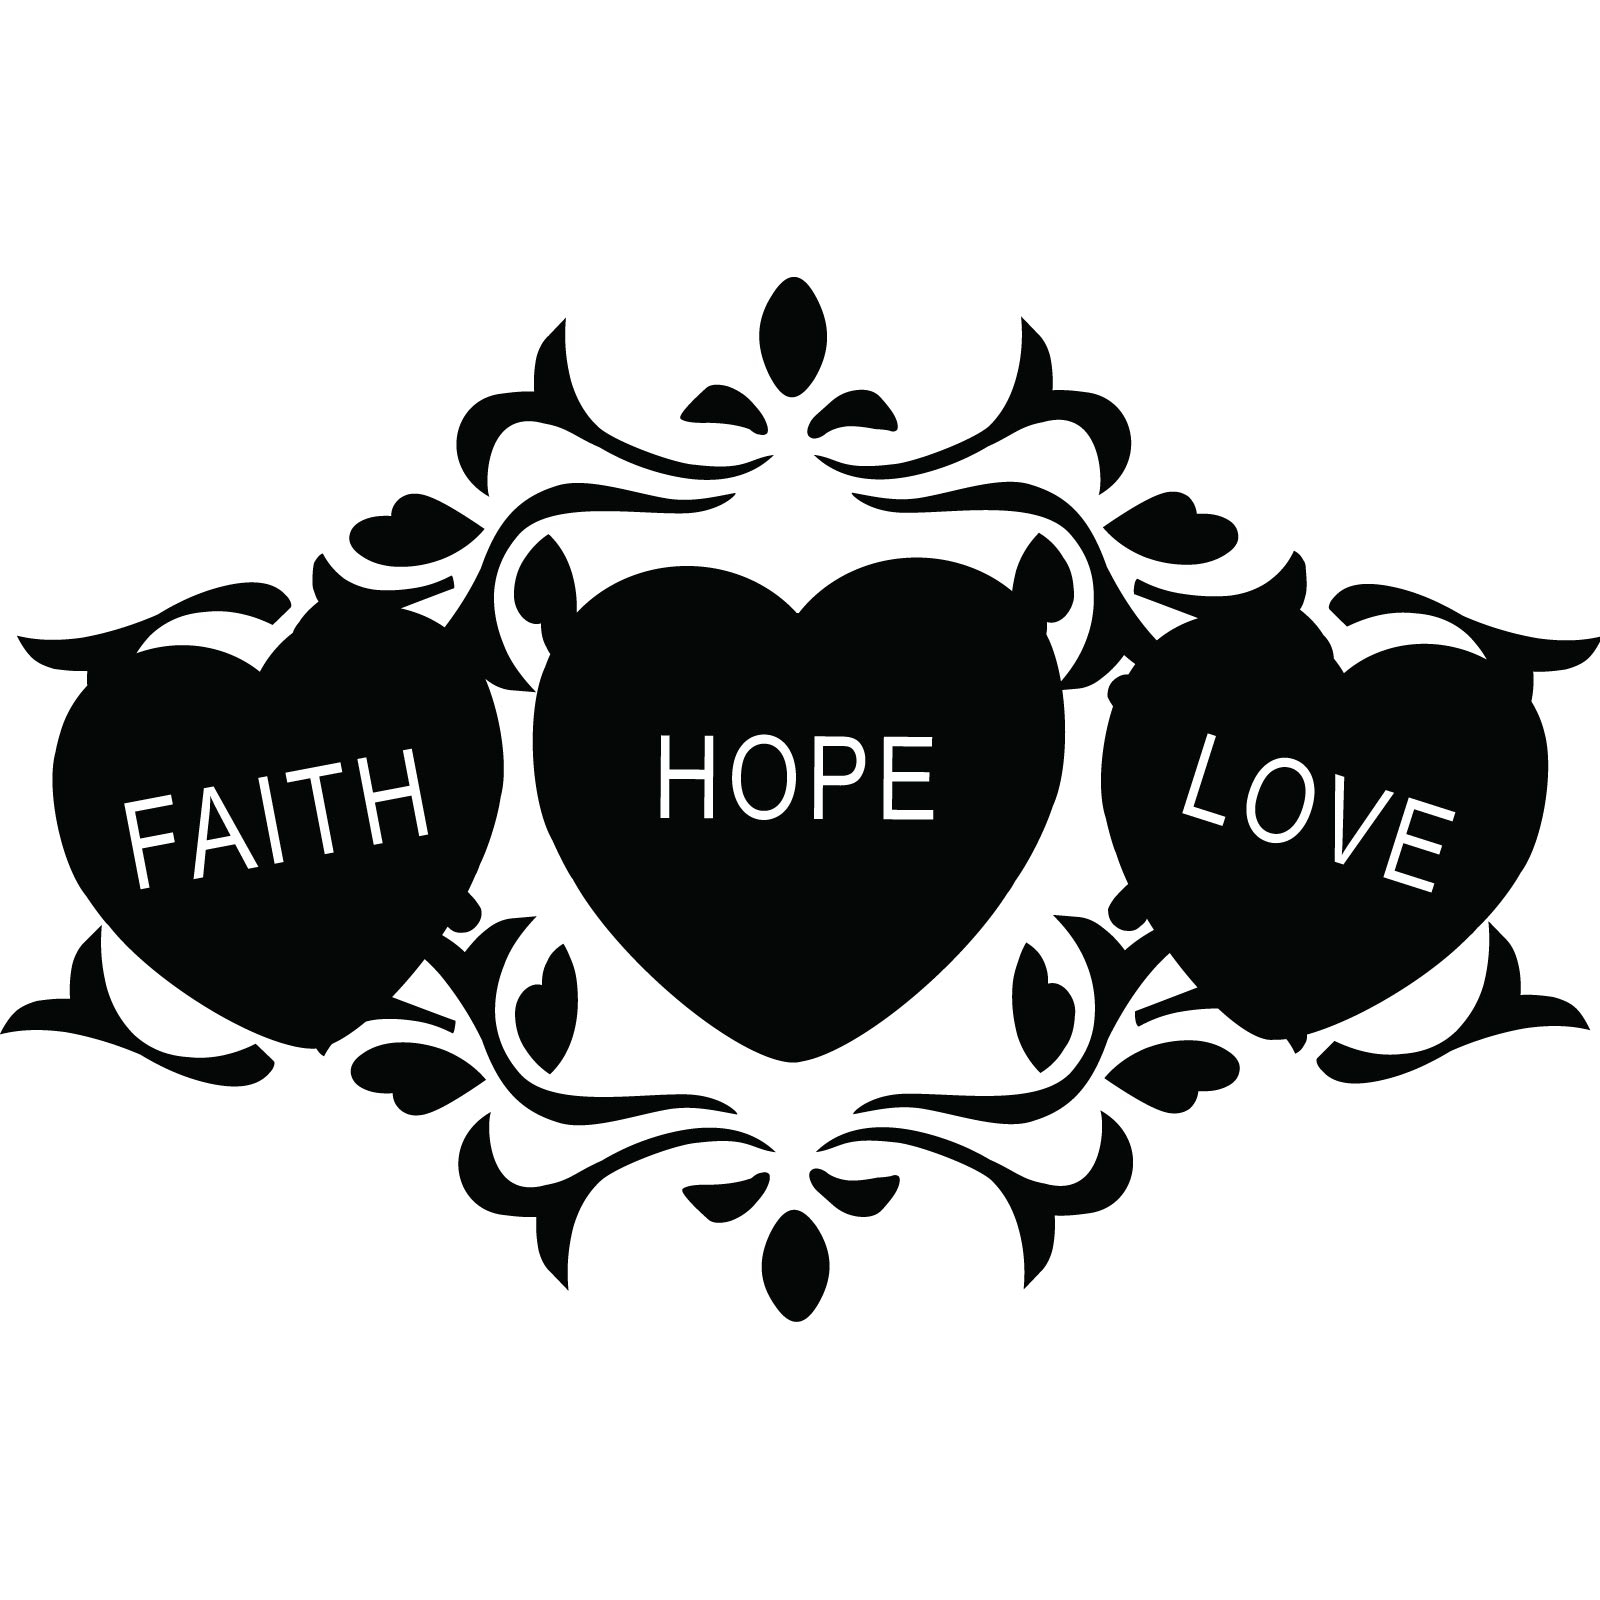 Faith hope love clipart with jesus 